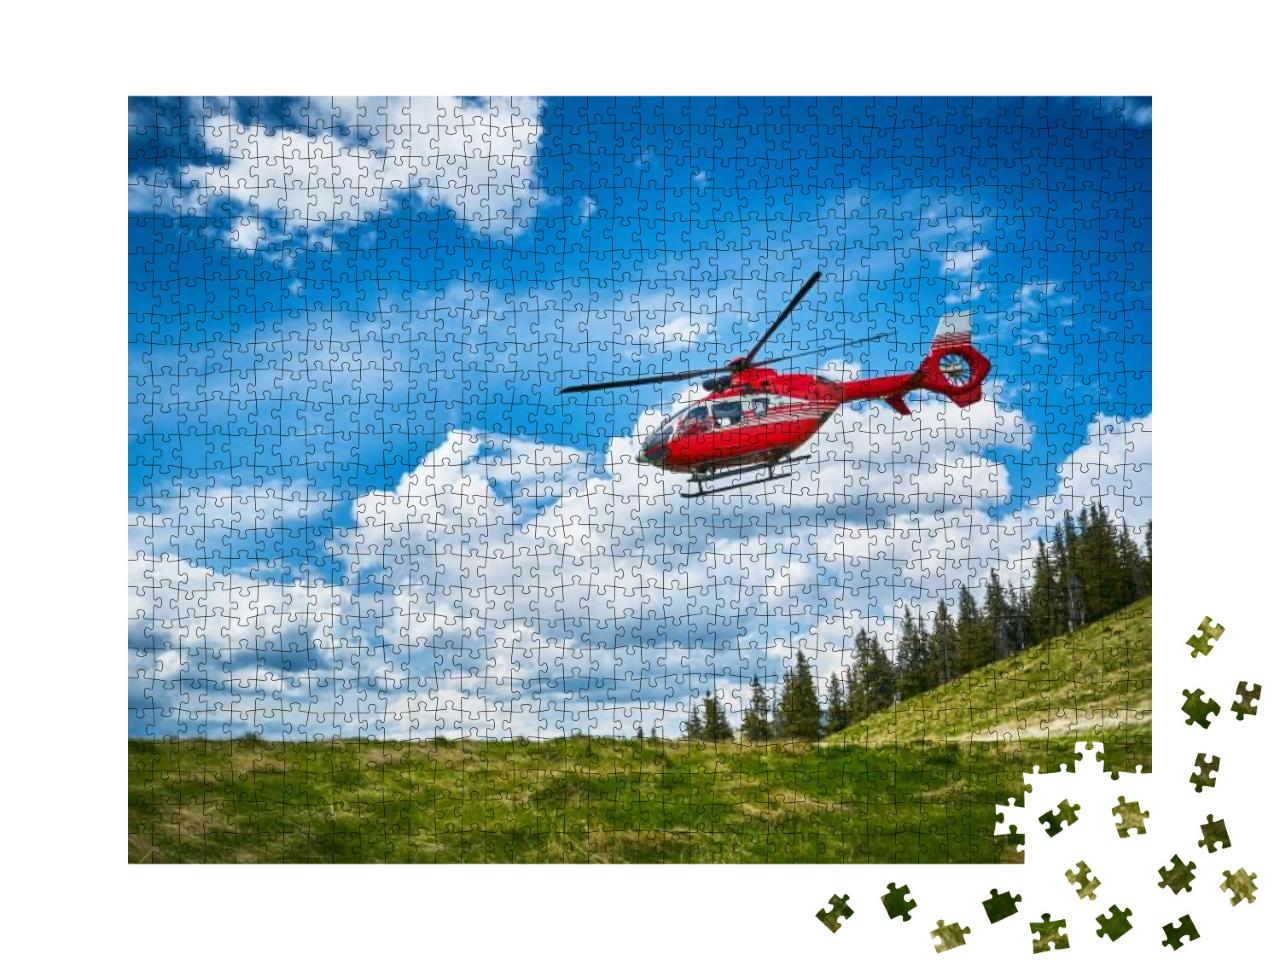 Puzzle 1000 Teile „Start eines Hubschraubers in den Bergen“